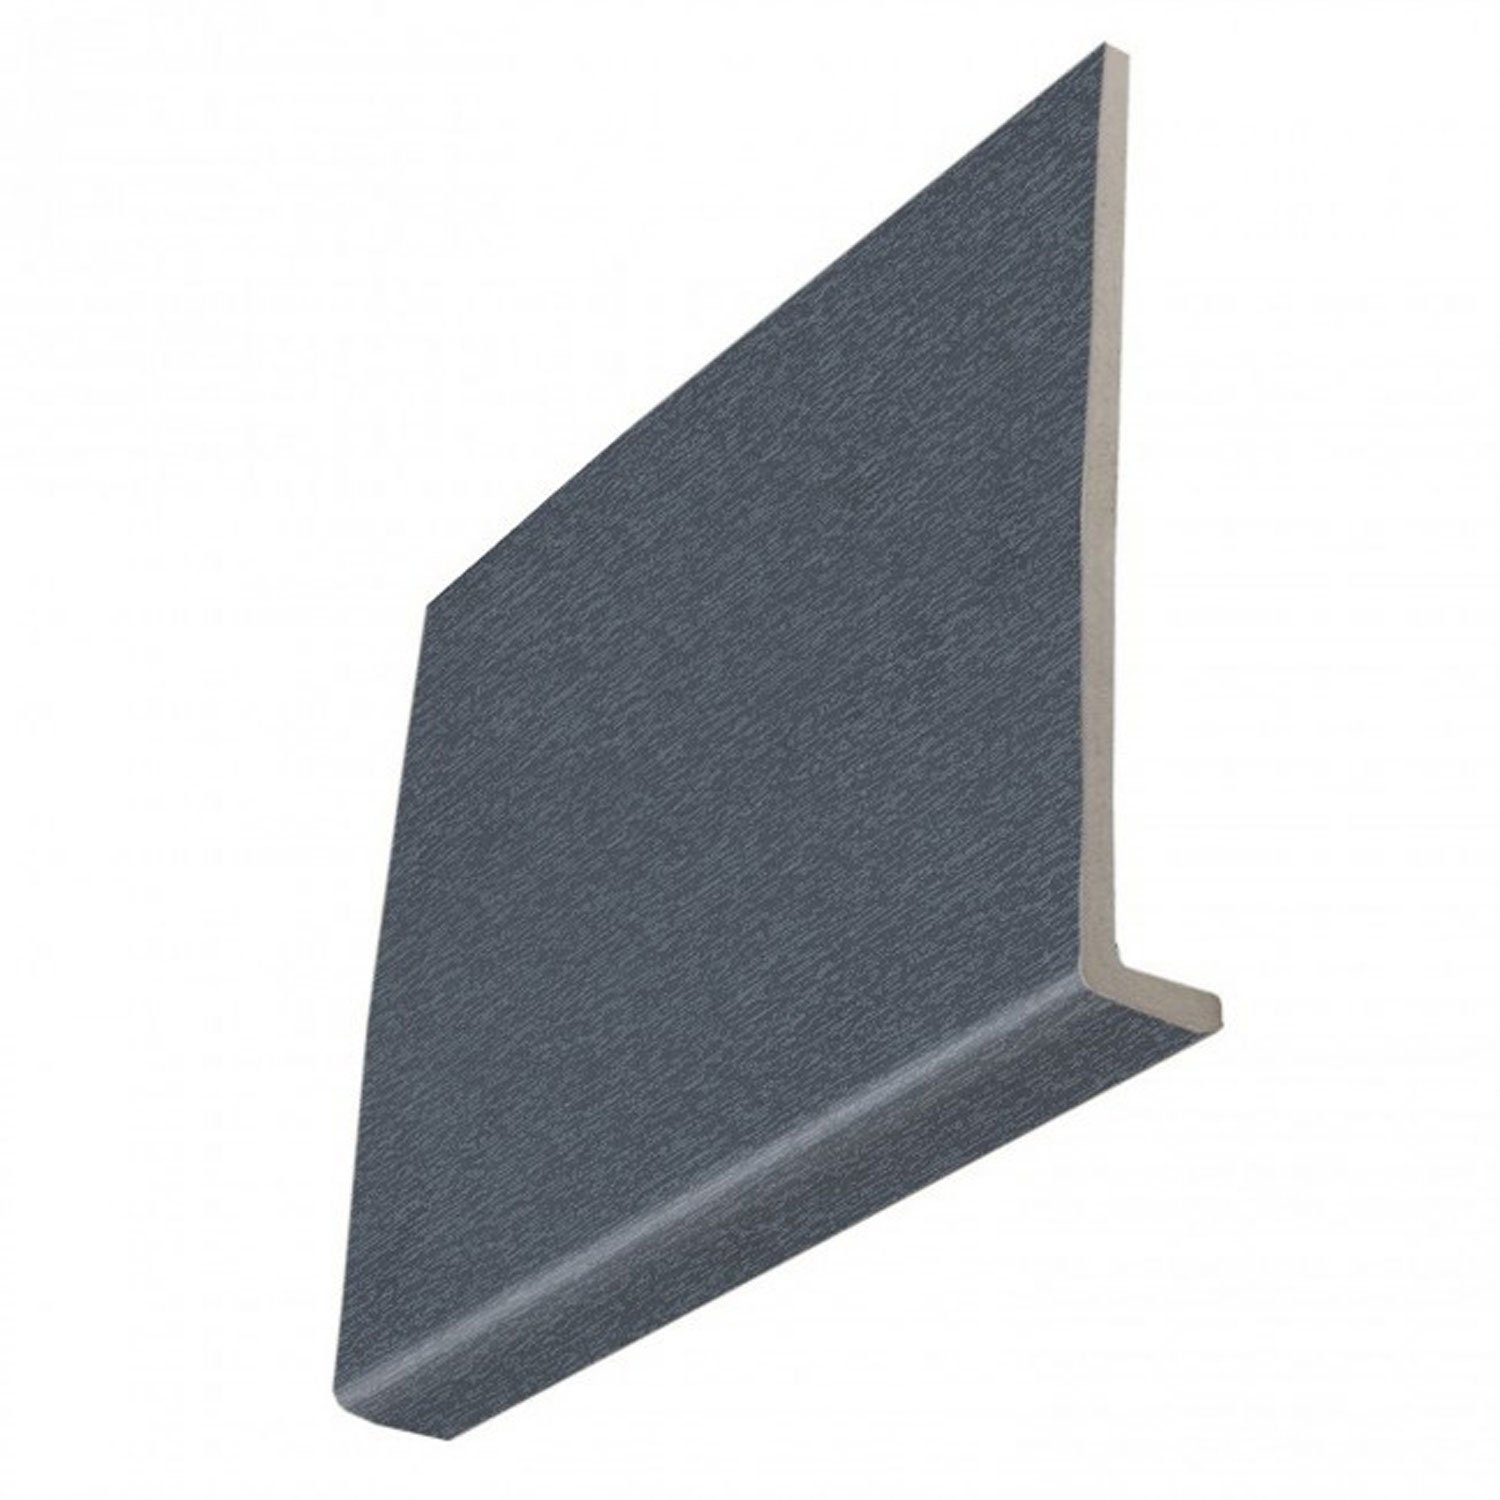 9mm Square Anthracite Grey Woodgrain Fascia Boards